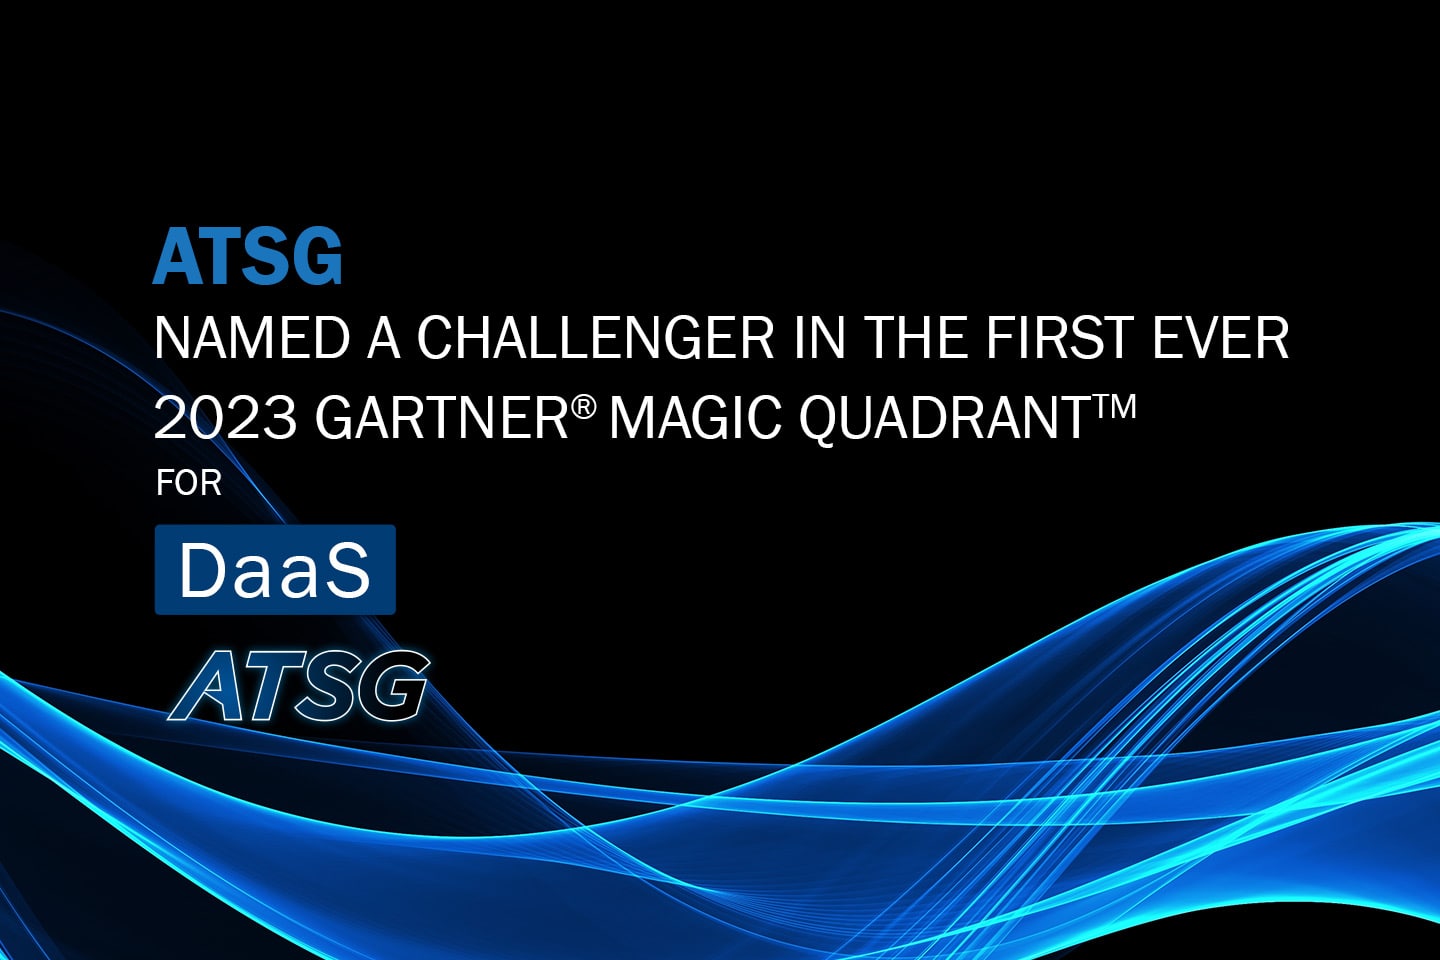 ATSG-Cloud-named-a-challenger-Gartner-MQ-DaaS-2023-Featured